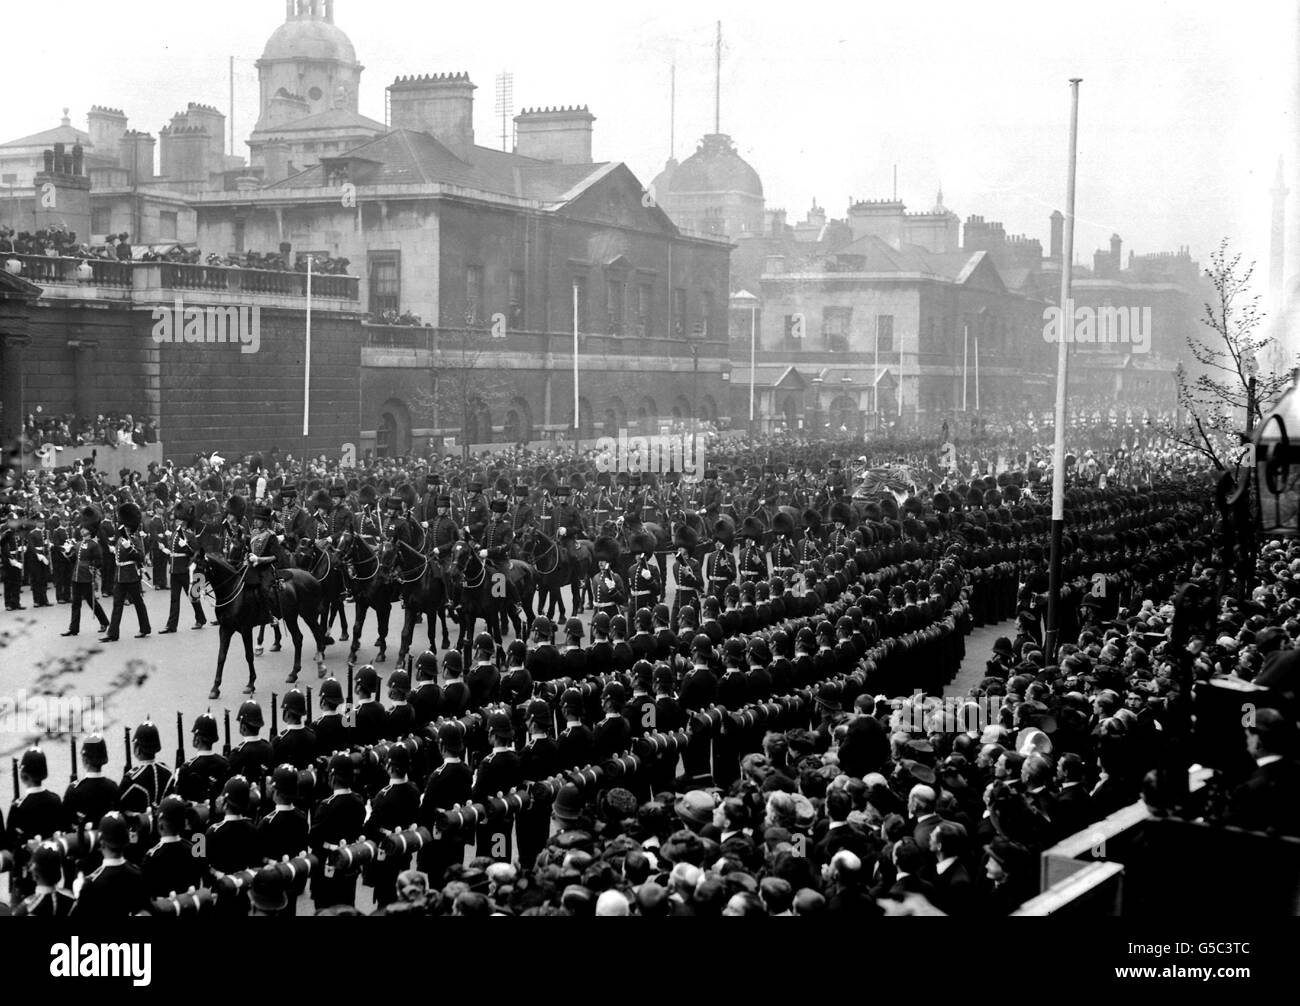 1910: La procession funéraire du roi Edward VII sort de Horse Guards Parade à Whitehall, Londres, sur son chemin à l'abbaye de Westminster pour le service funéraire. Le cercueil du roi tardif est porté sur un chariot à canon. Banque D'Images